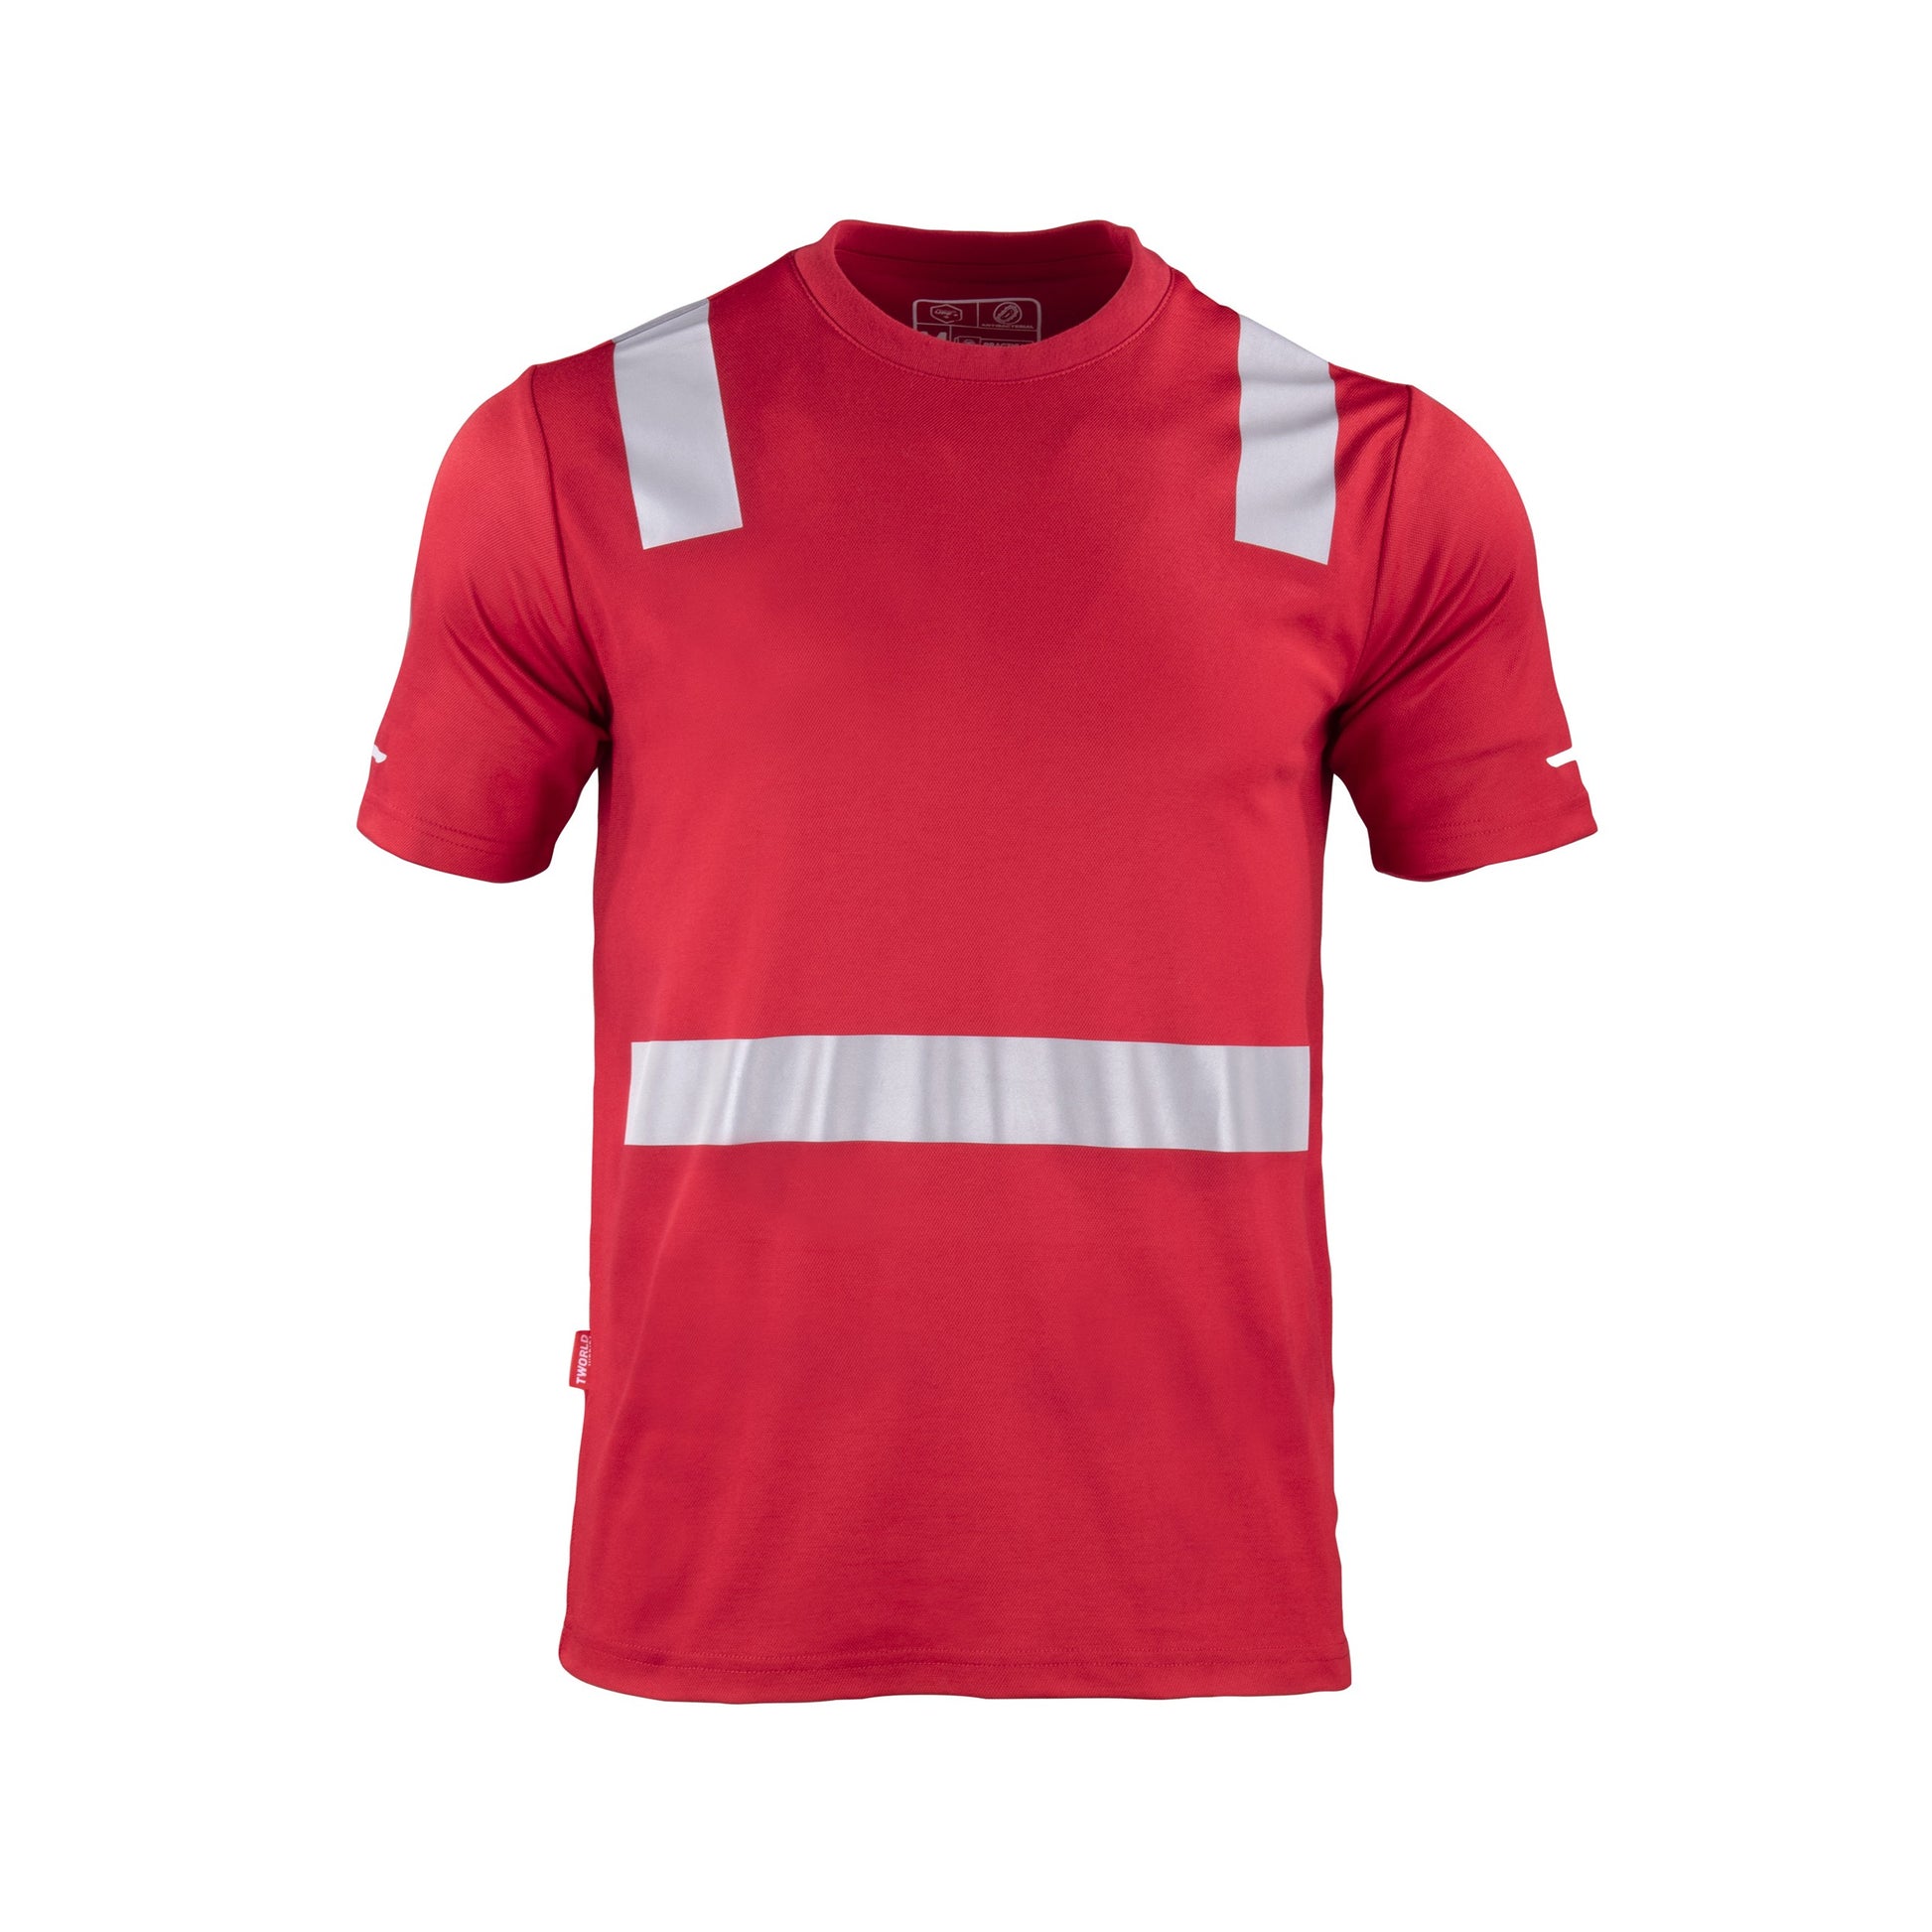 Polera roja de manga corta con cinta reflectante, adecuada para alta visibilidad y seguridad en el trabajo"  Esta etiqueta alt proporciona una descri